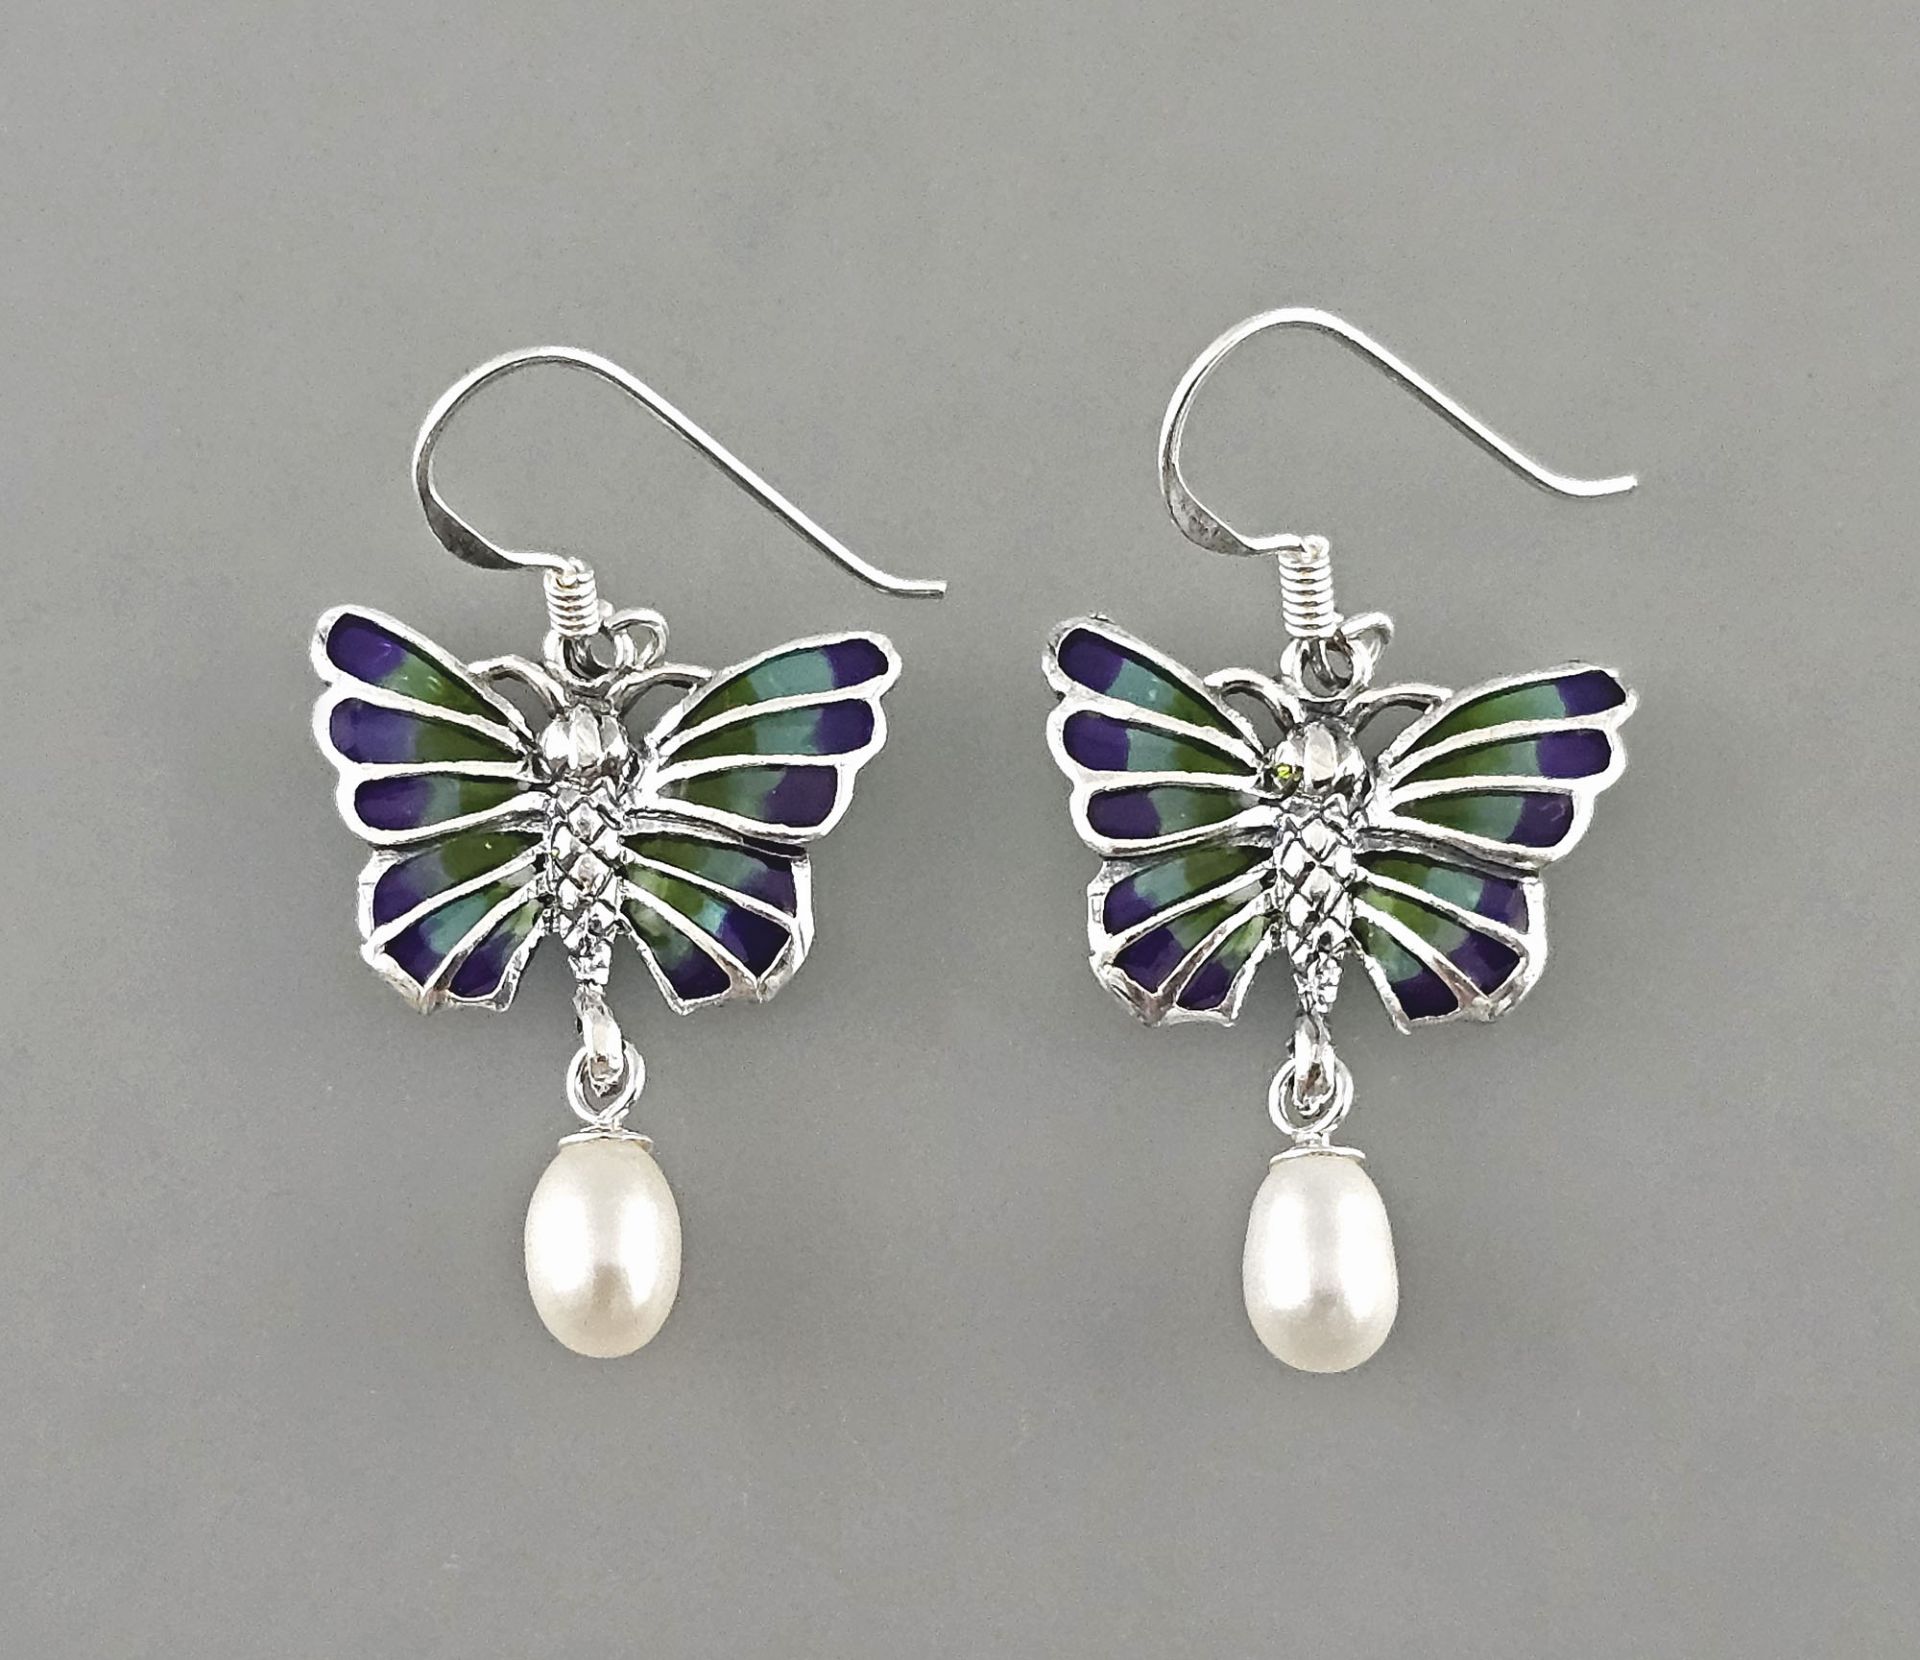 Emaillierte Ohrringe mit Perle Schmetterling 